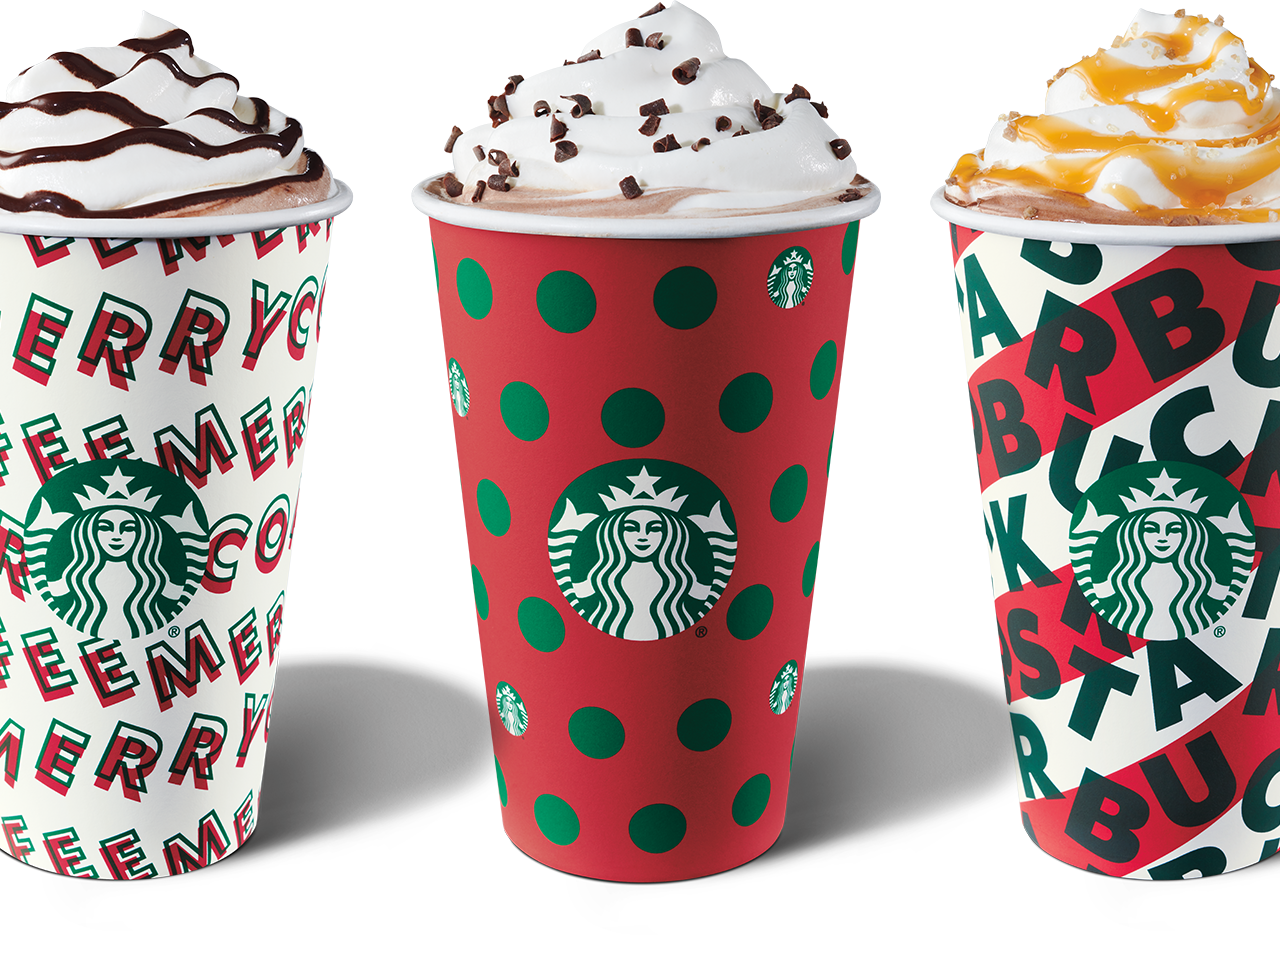 Starbucks Hot Chocolate Png Starbucks flavors best starbucks coffee